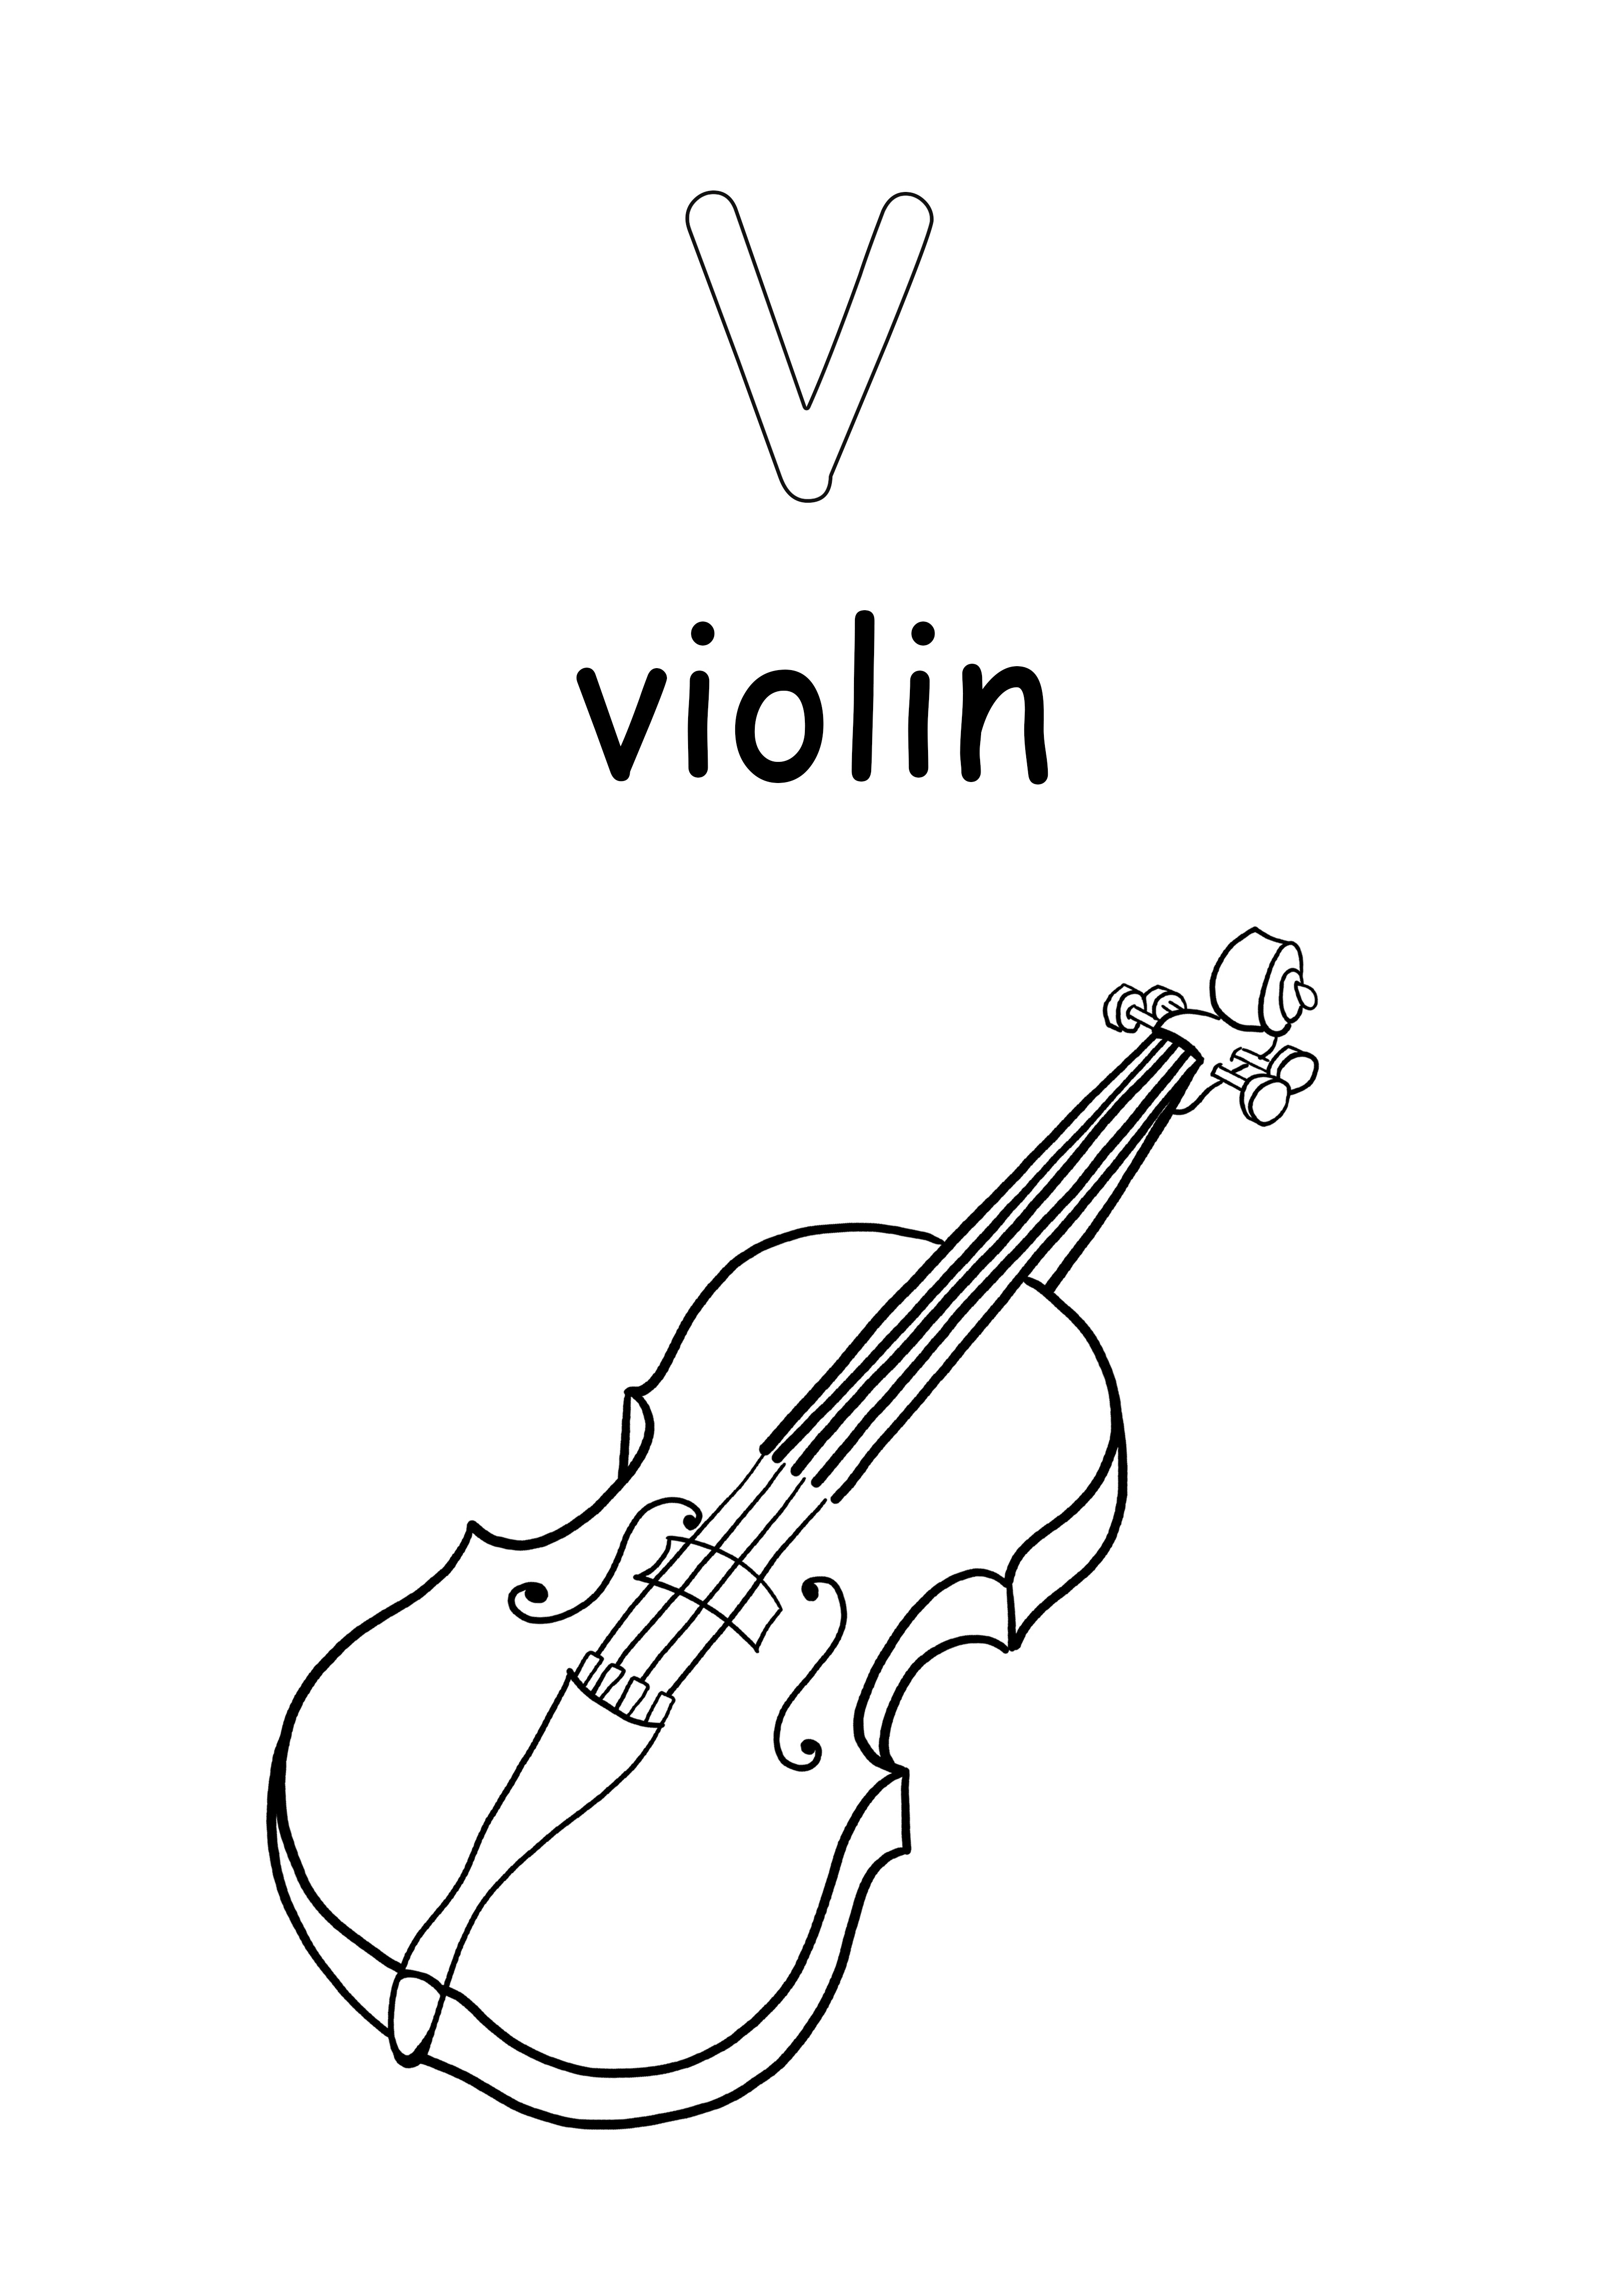 Le lettere minuscole v sono per violino da colorare e stampare gratuitamente il foglio